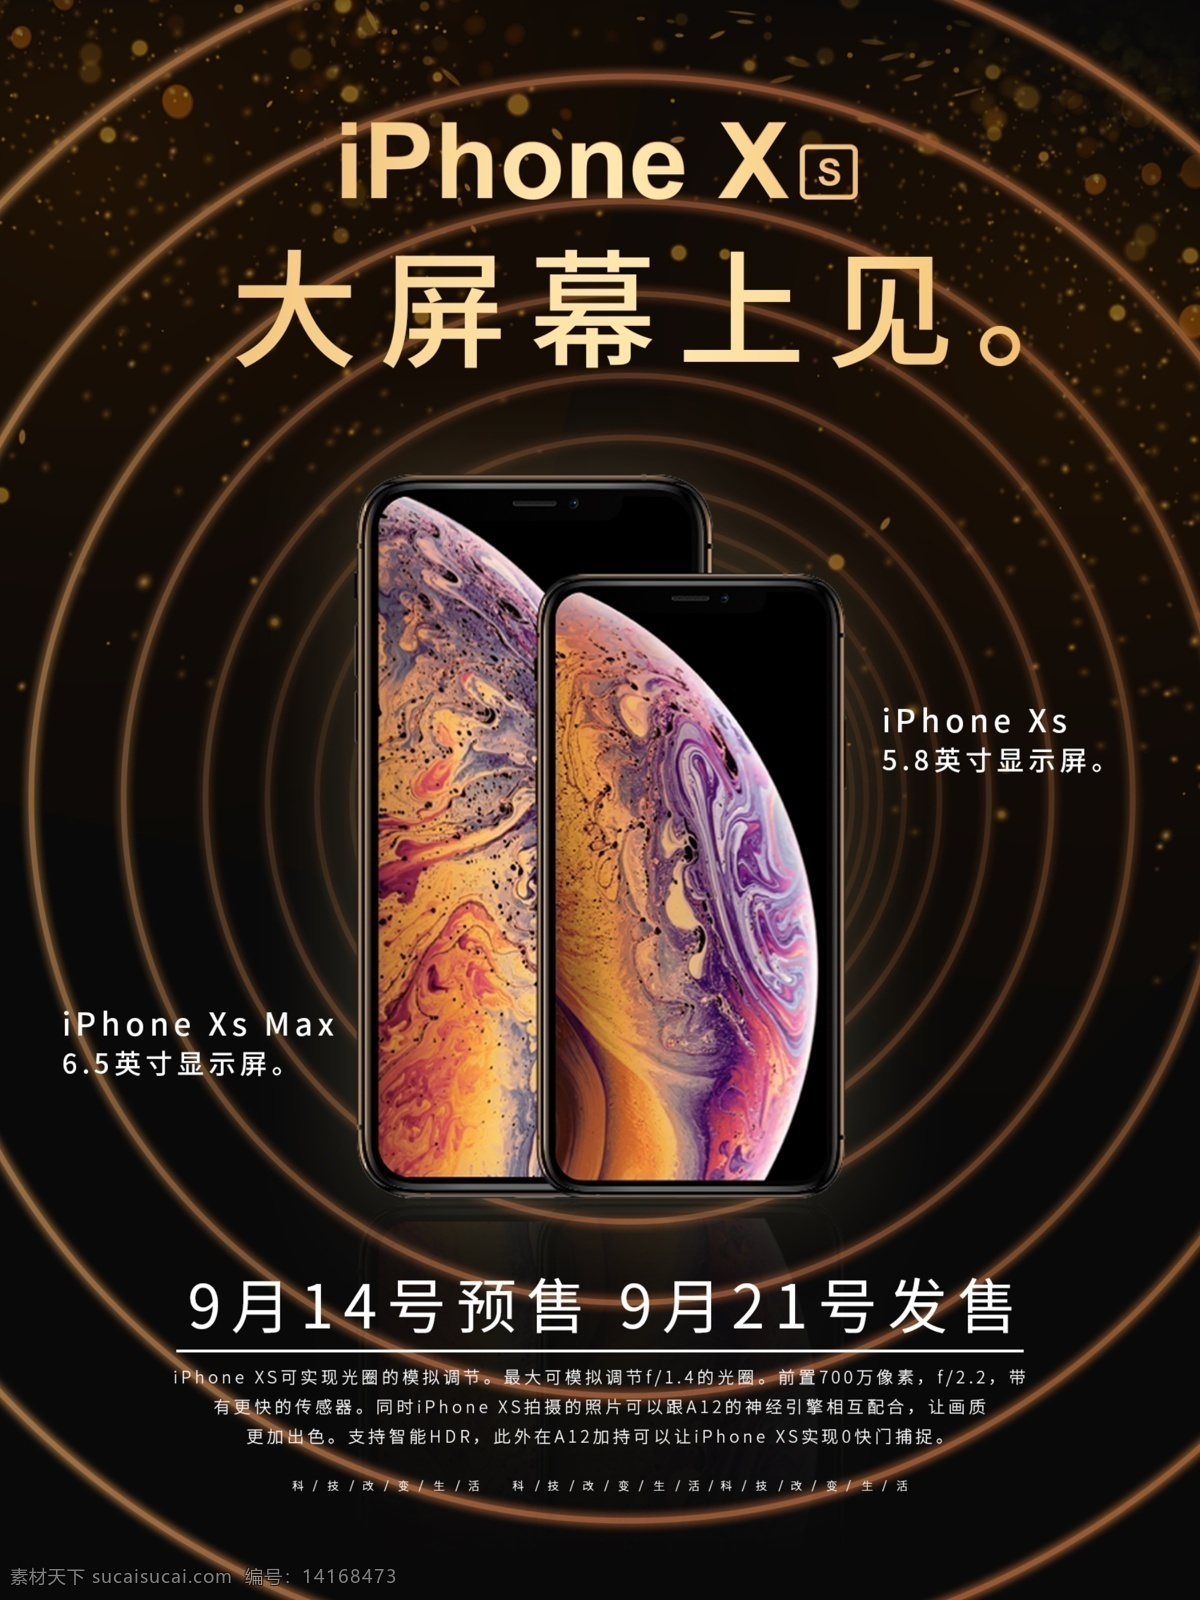 iphonexs 高端 苹果 手机 促销 海报 iphone 金色